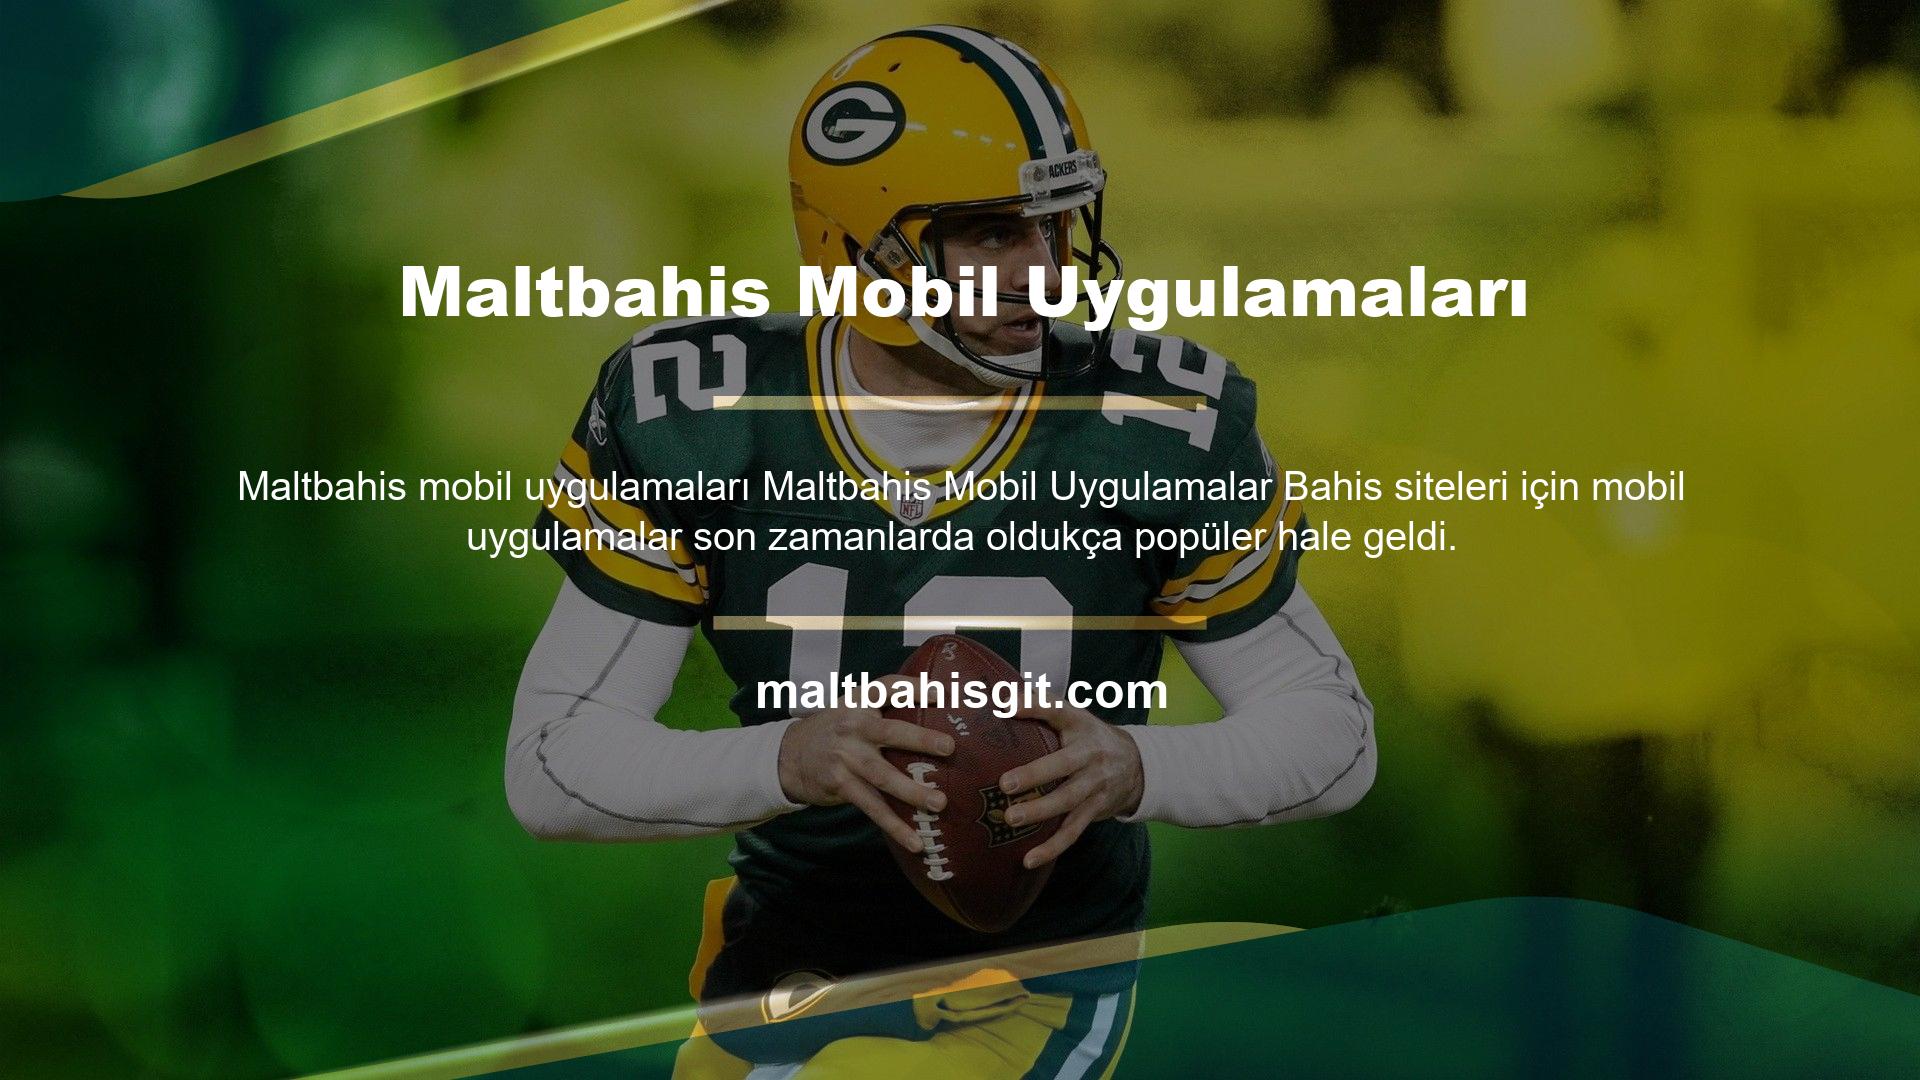 Maltbahis oyun sitesi, üyelerinin rahatlığı için bir mobil uygulama yayınladı